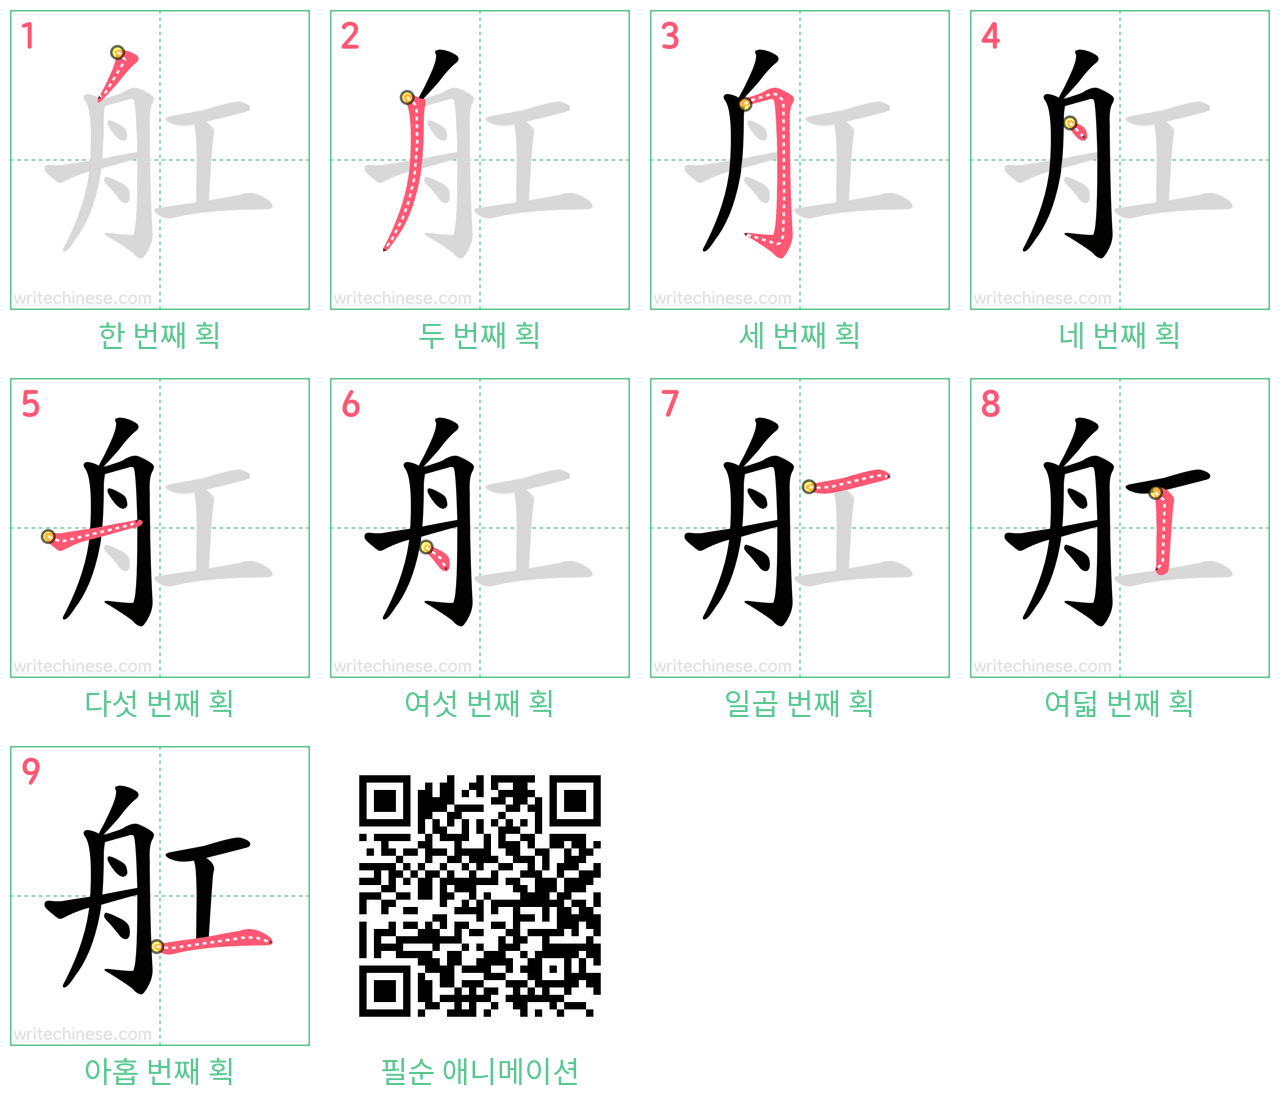 舡 step-by-step stroke order diagrams